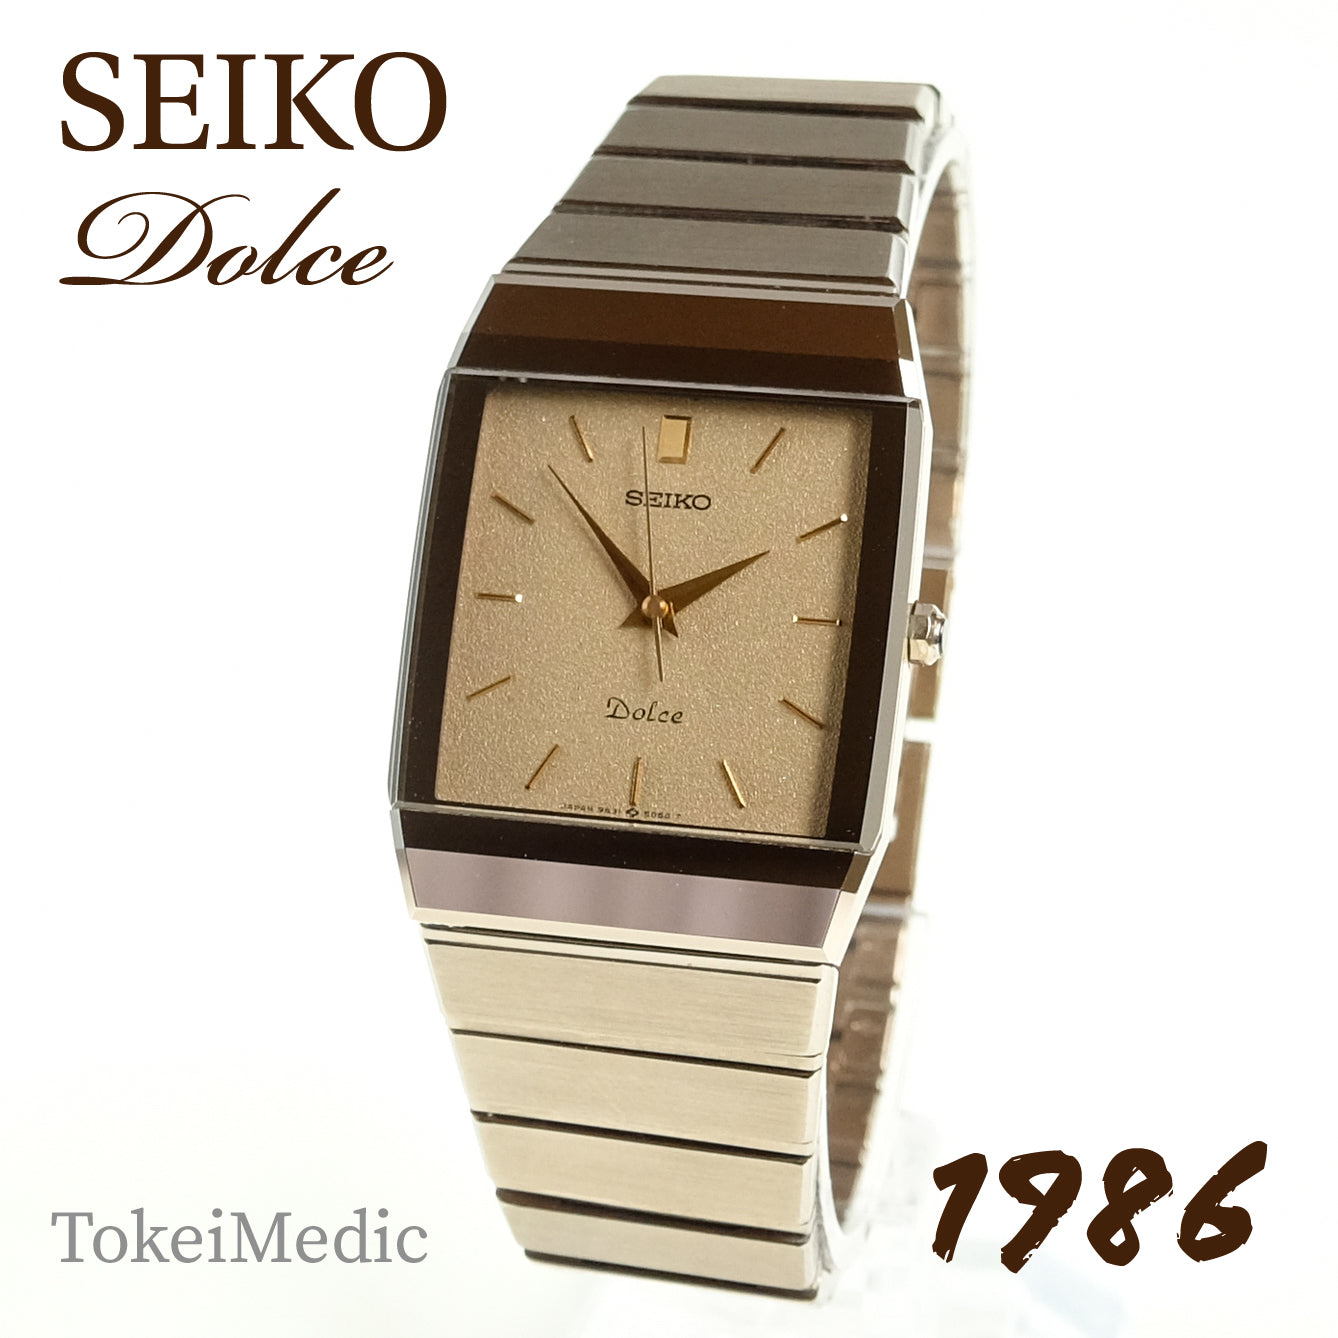 1986 Seiko Dolce 9531-5060